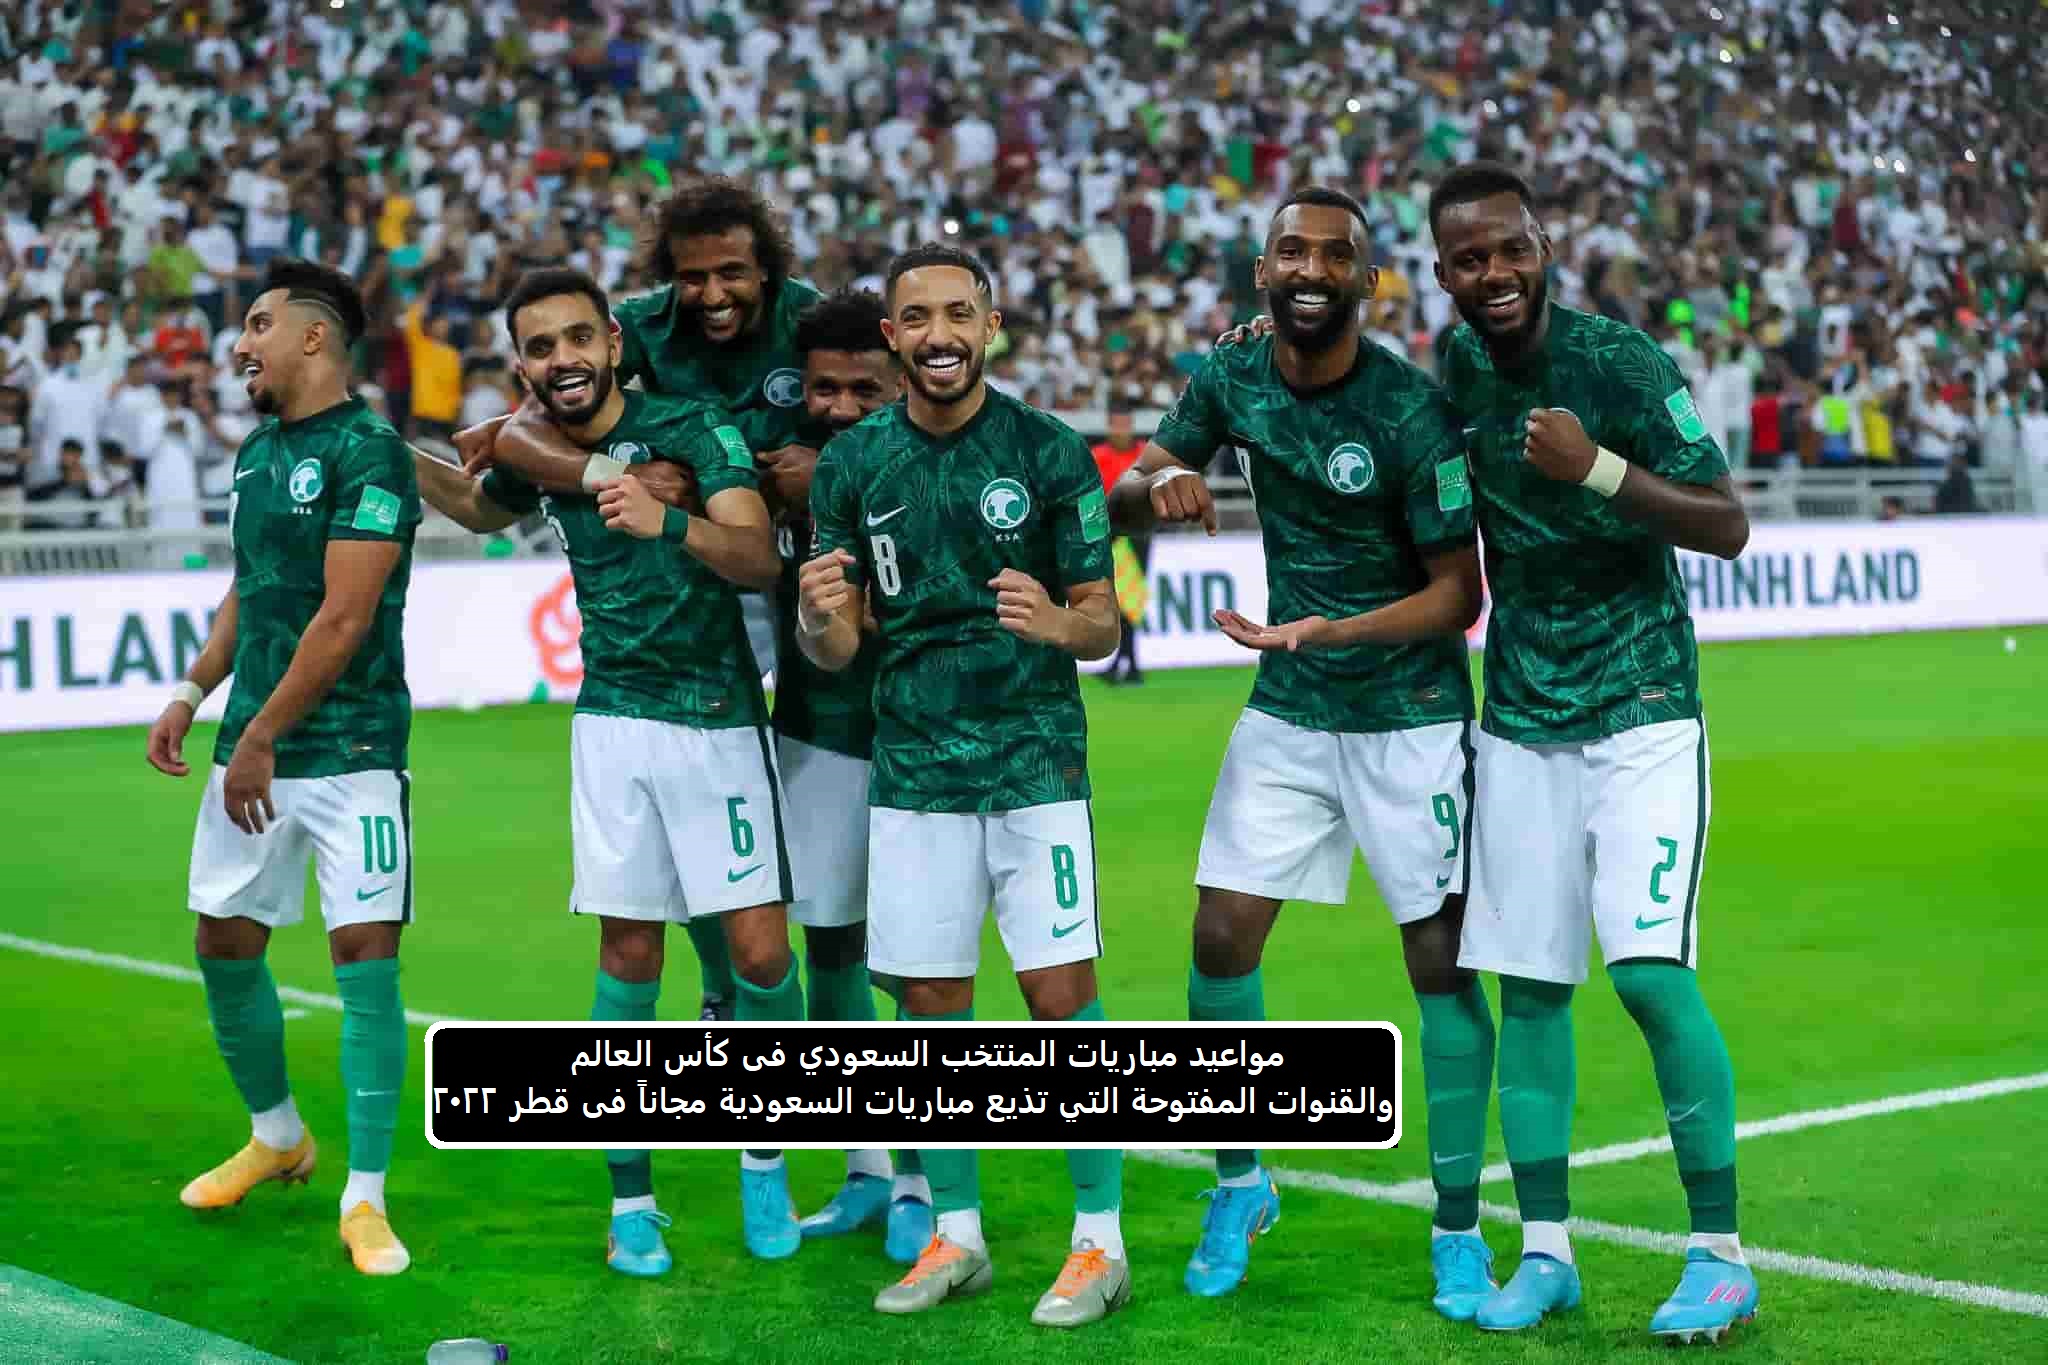 مواعيد مباريات المنتخب السعودي فى كأس العالم والقنوات المفتوحة التي تذيع مباريات السعودية مجاناً فى قطر 2022